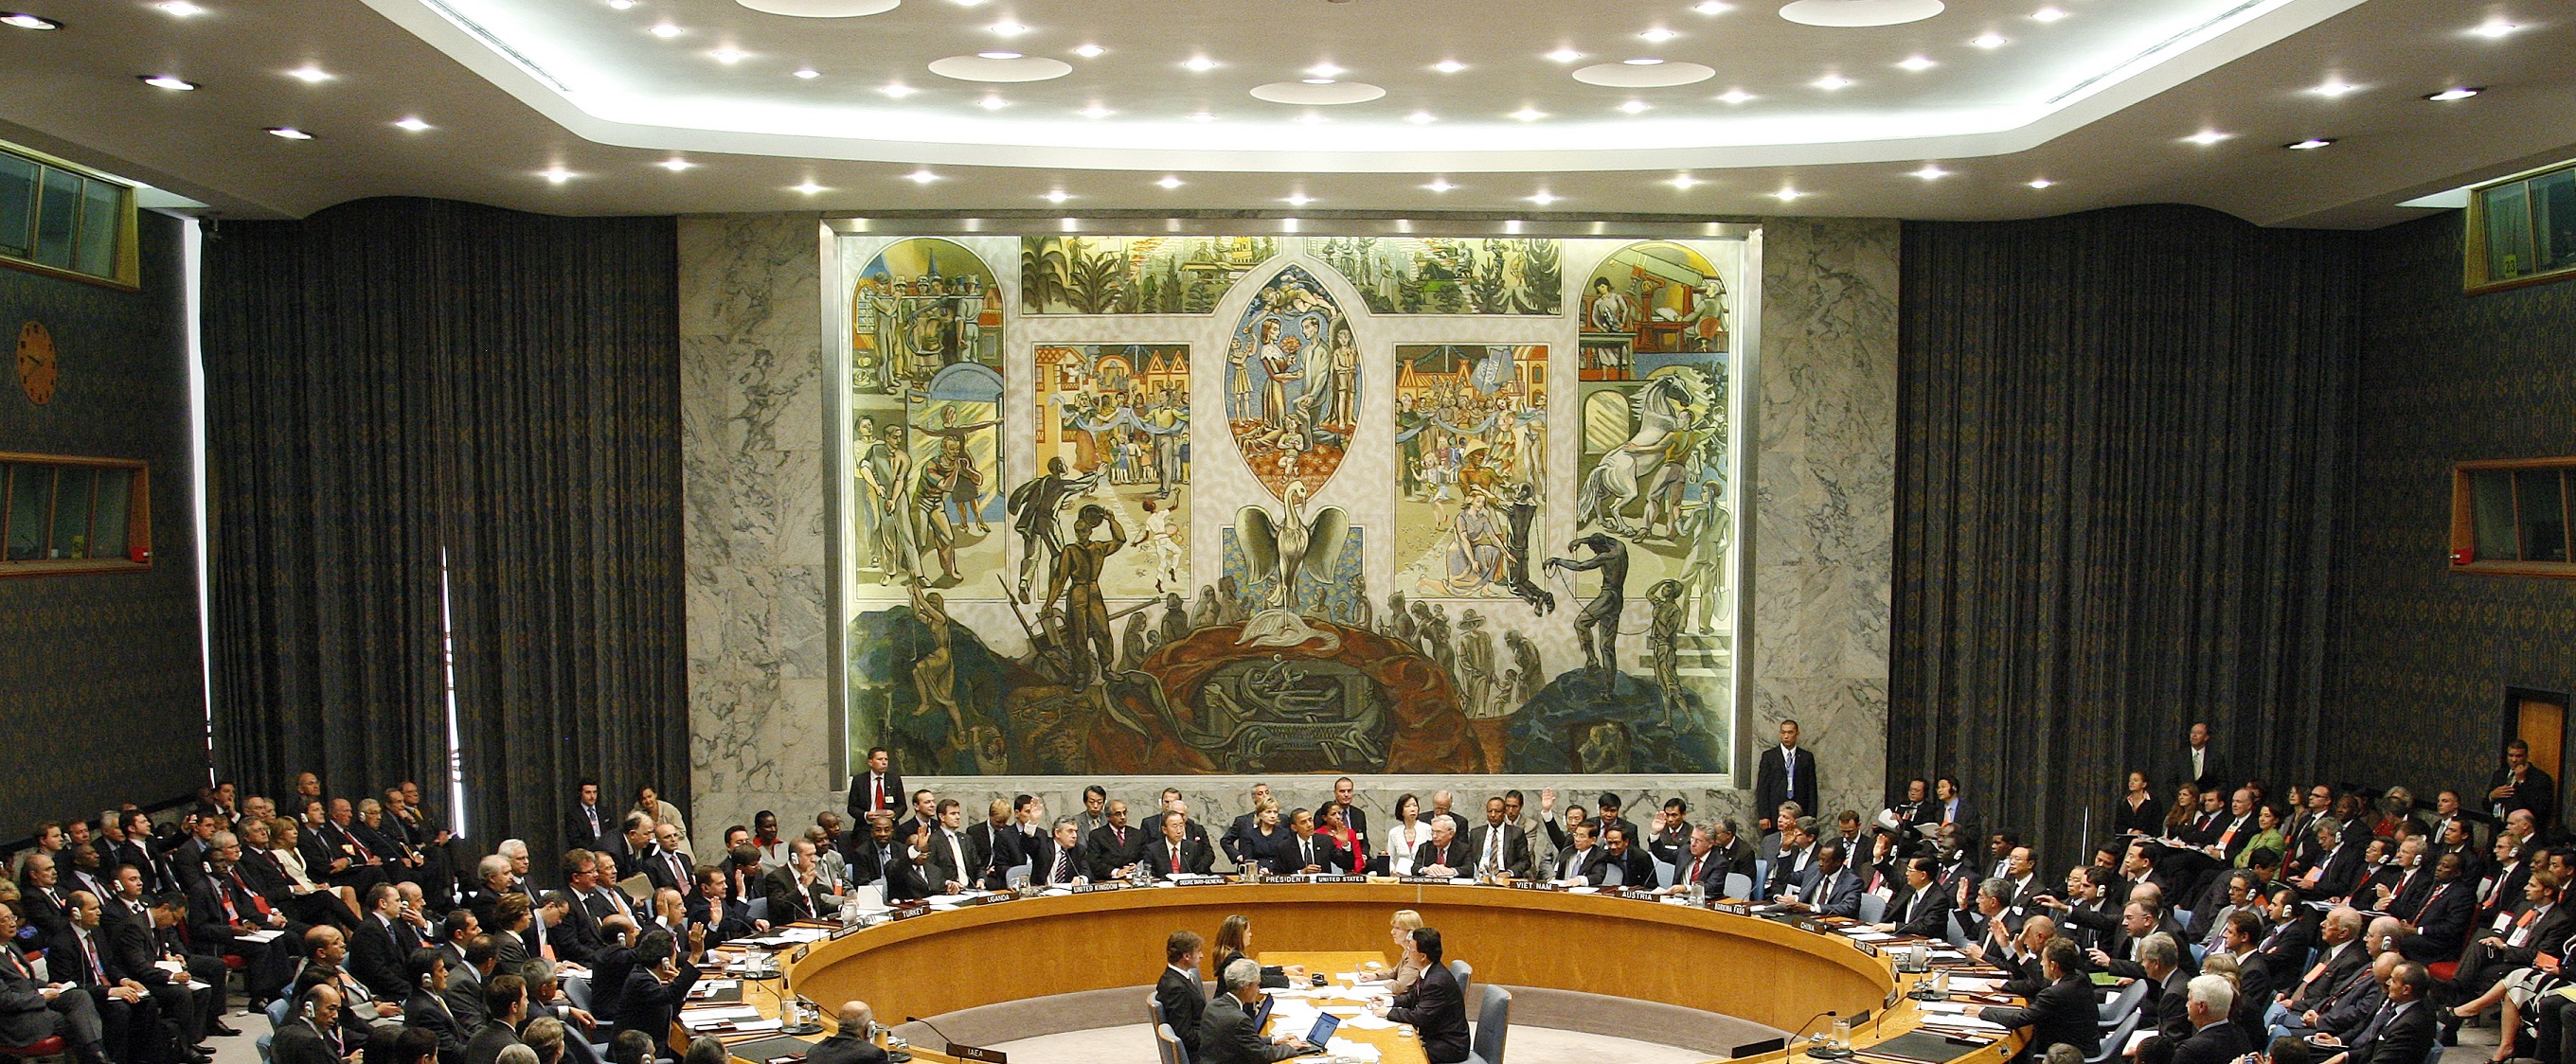 Sikkerhetsrådssalen 2009, UN-photo: Mark Garten